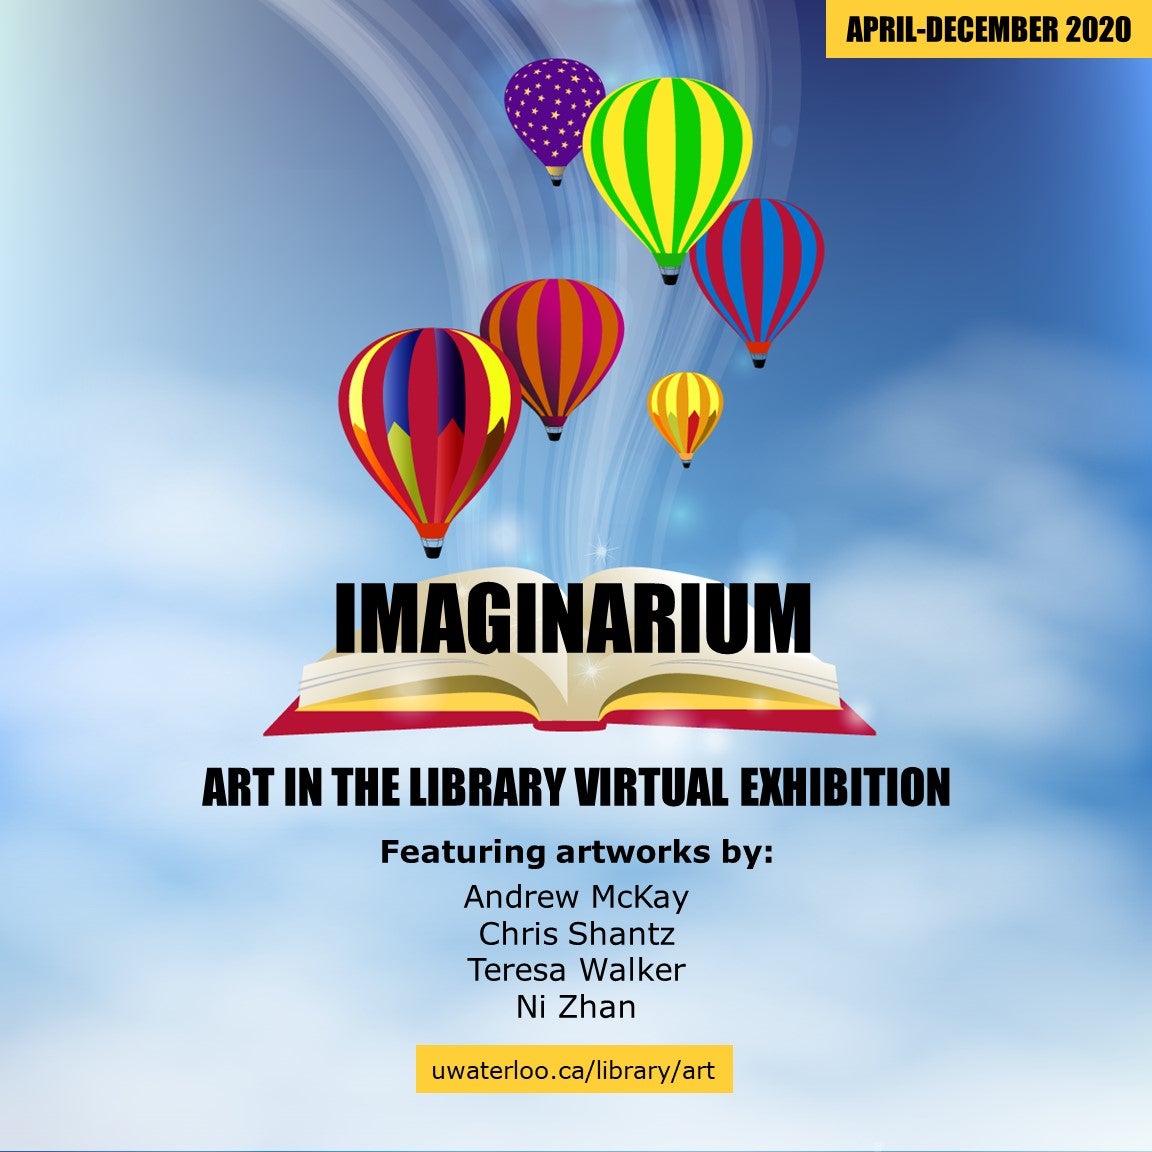 Imaginarium Art in the Library virtual exhibit